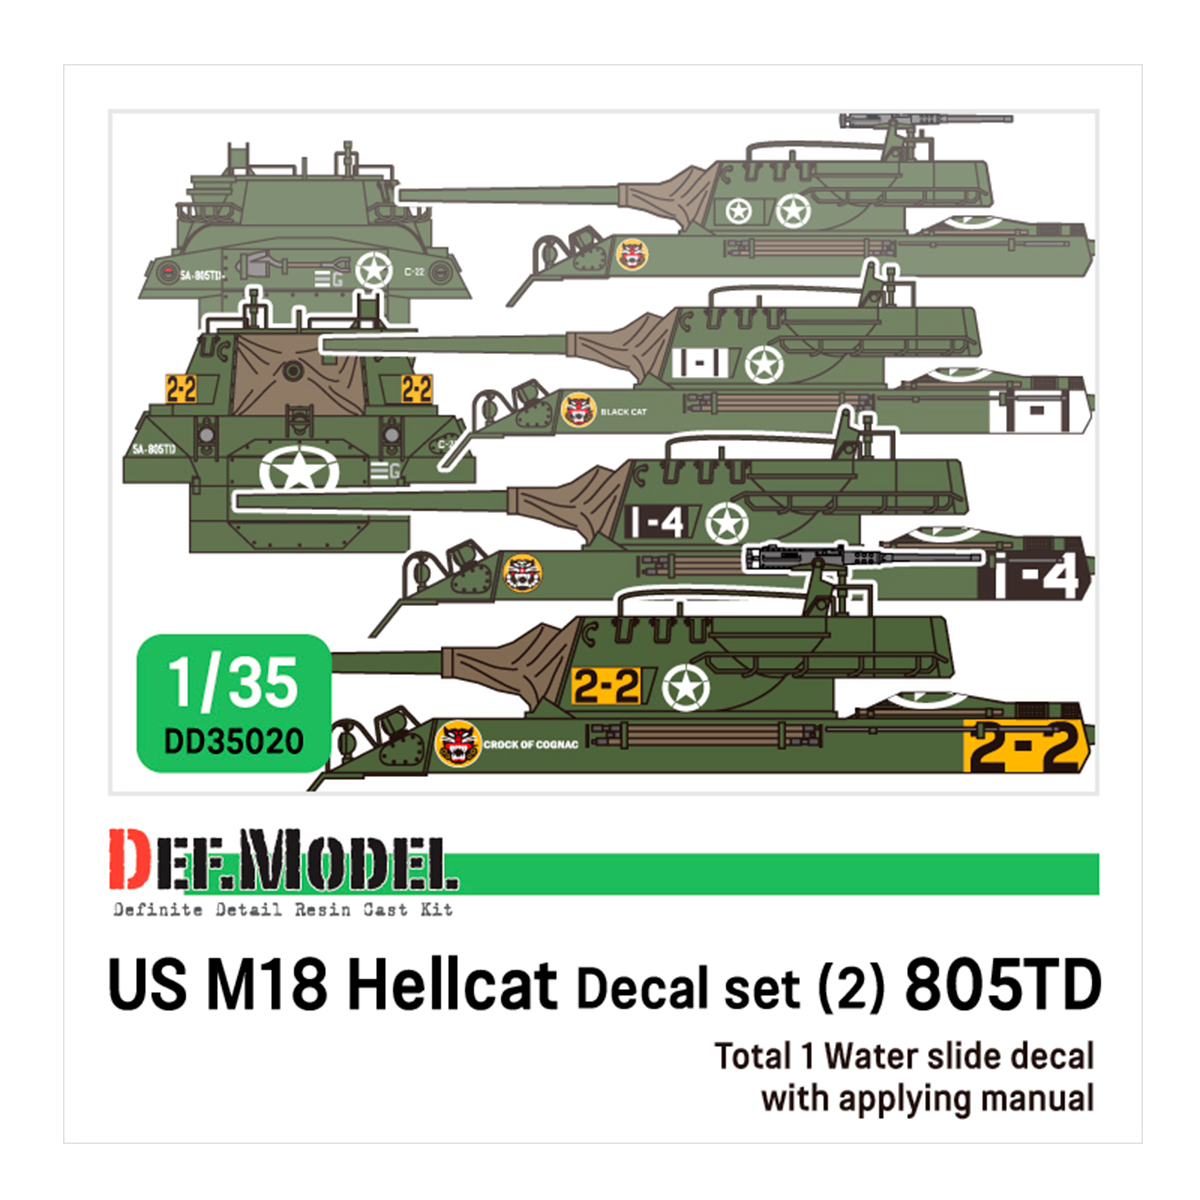 WWII US M18 Hellcat 805TD decal set (1/35 M18 Hellcat kit)